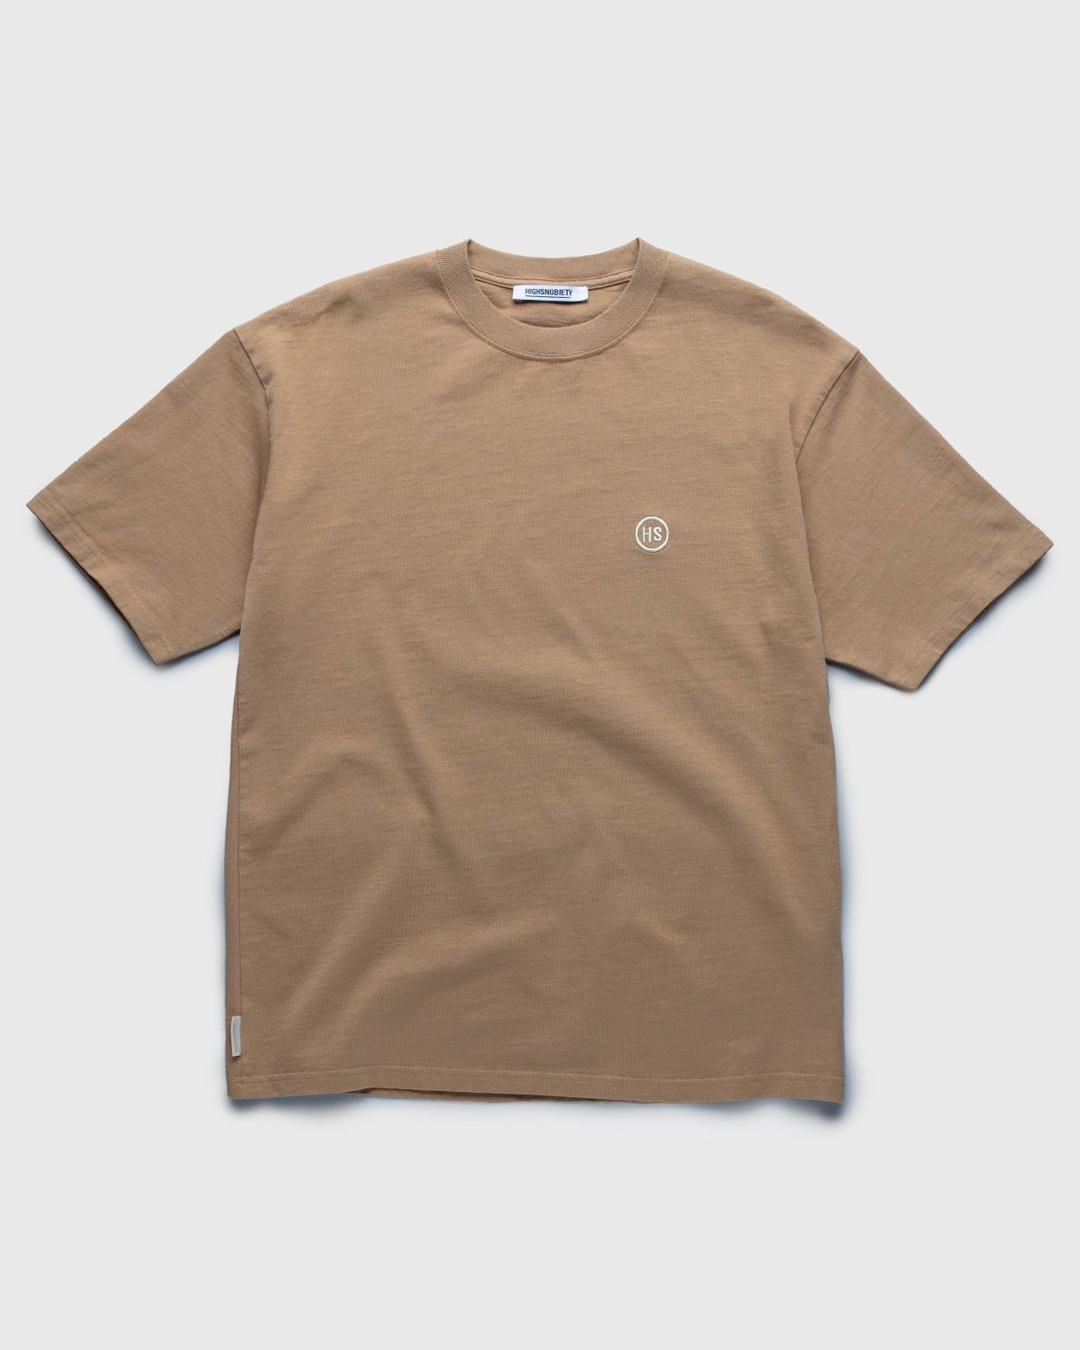 Highsnobiety – T-Shirt Cork - Tops - Beige - Image 1